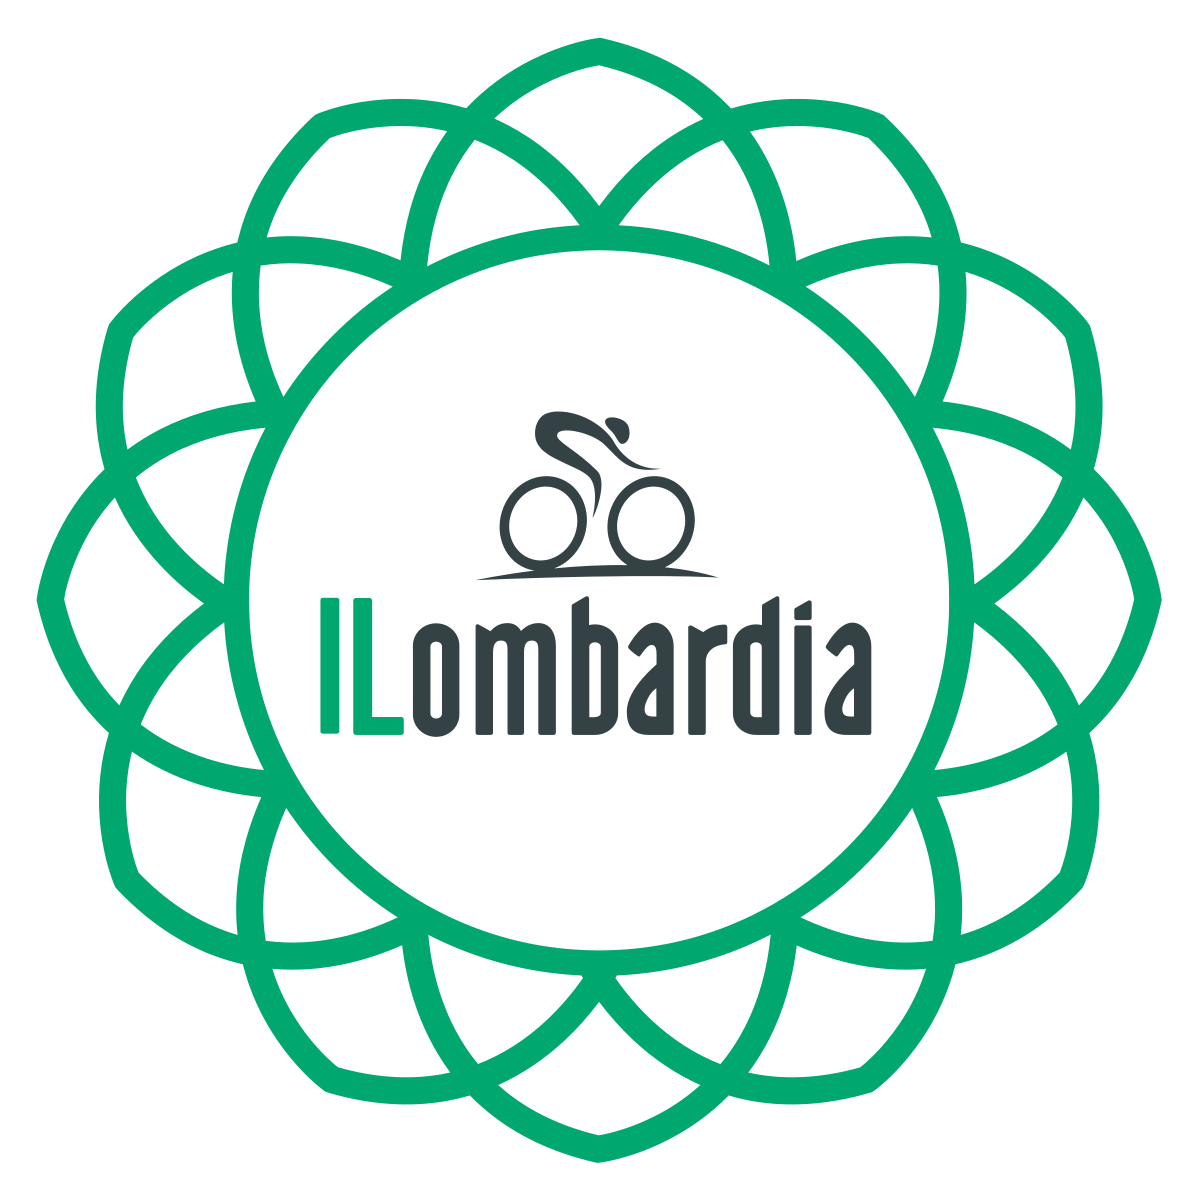 logo Il Lombardia